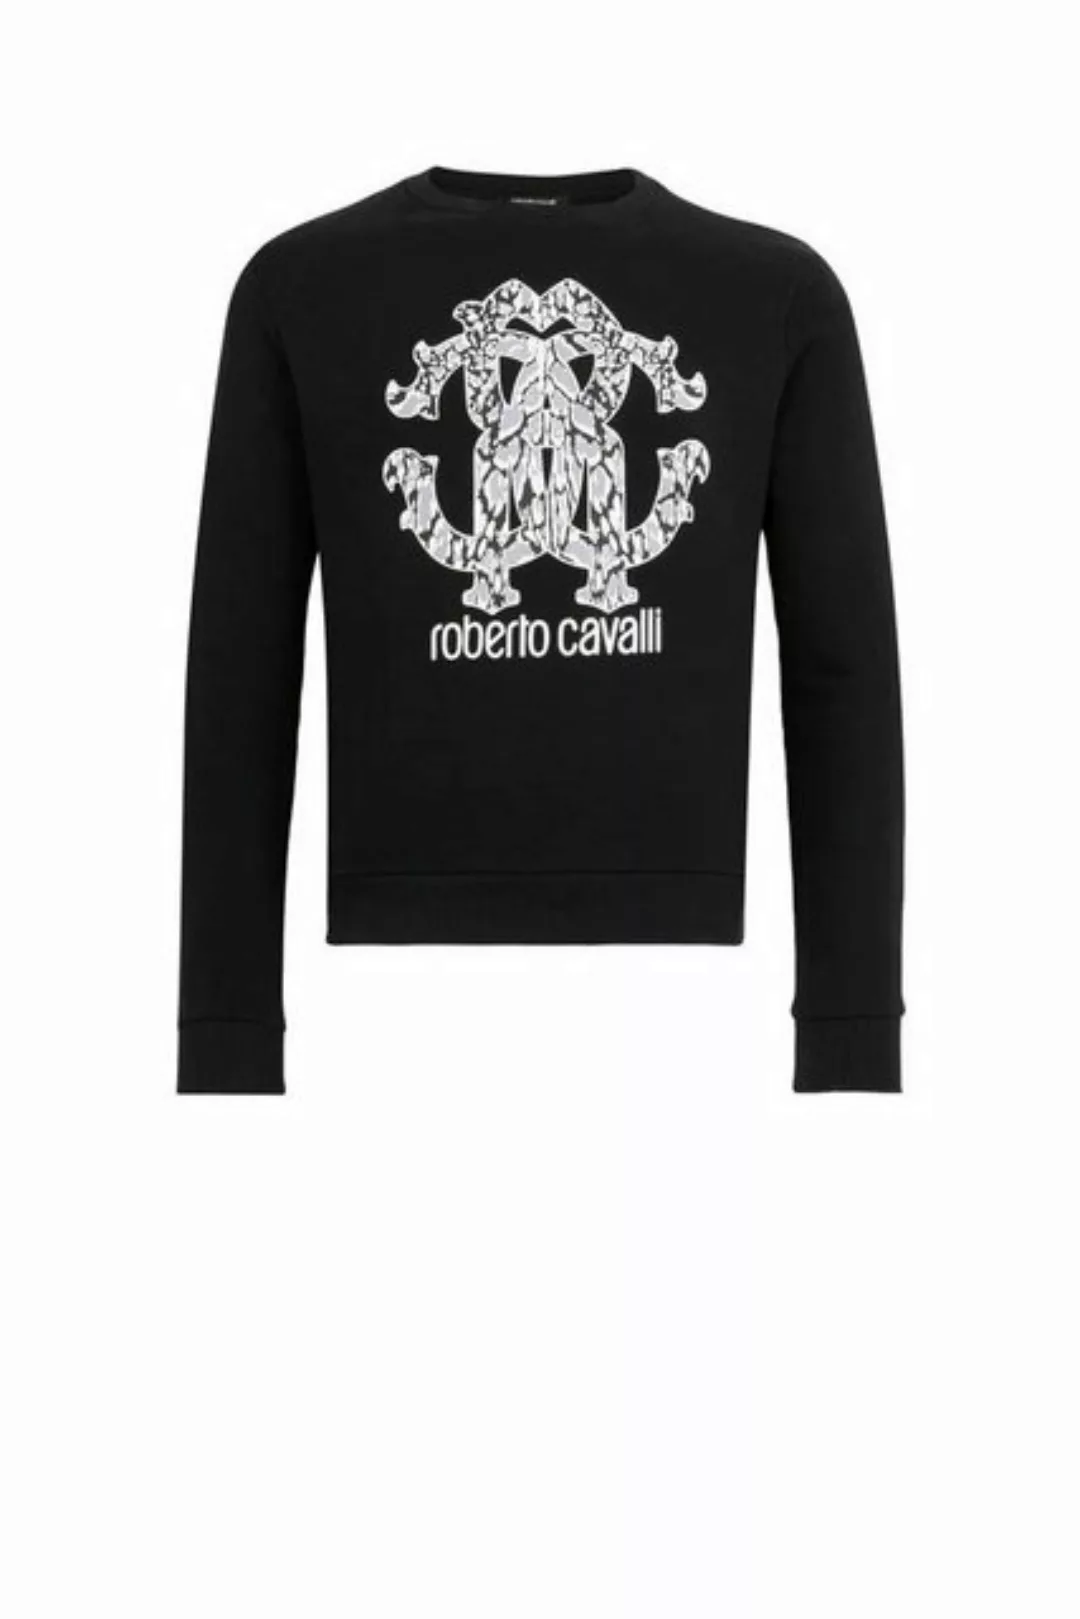 roberto cavalli Sweatshirt RC LOGO LYNX UNISEX SWEATSHIRT IST68KCF050 Schwa günstig online kaufen